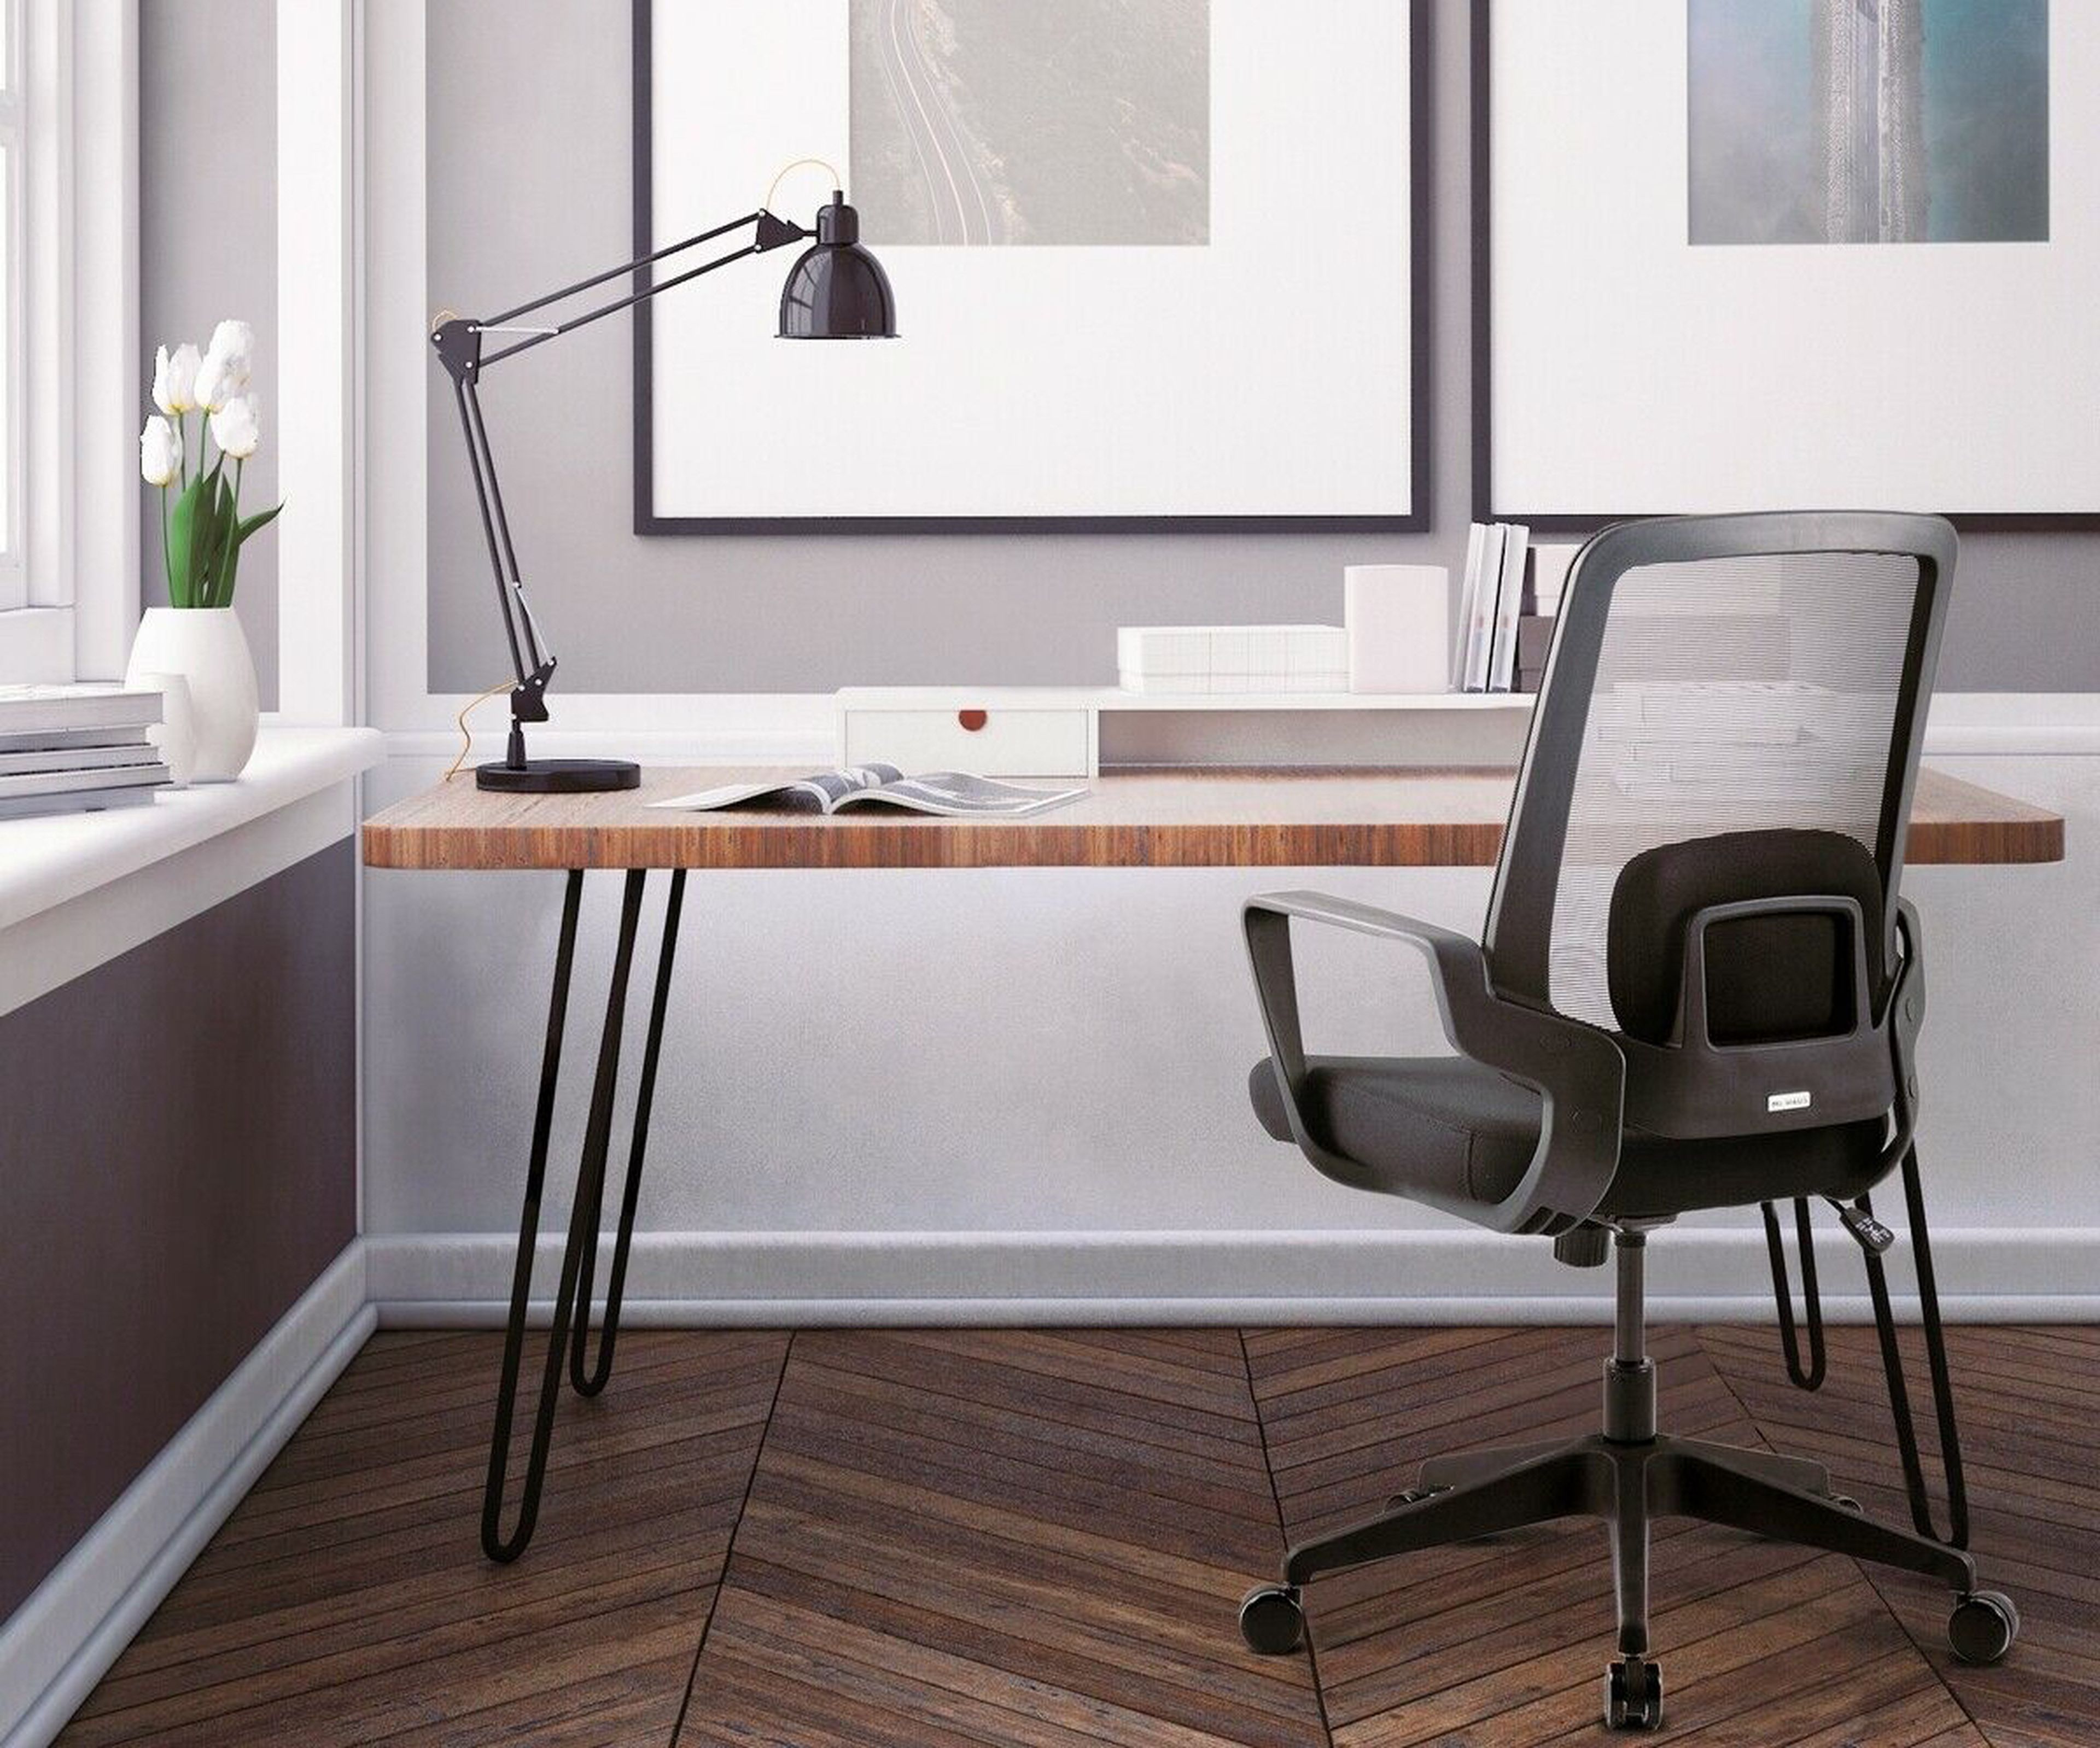 Silla escritorio minimalista